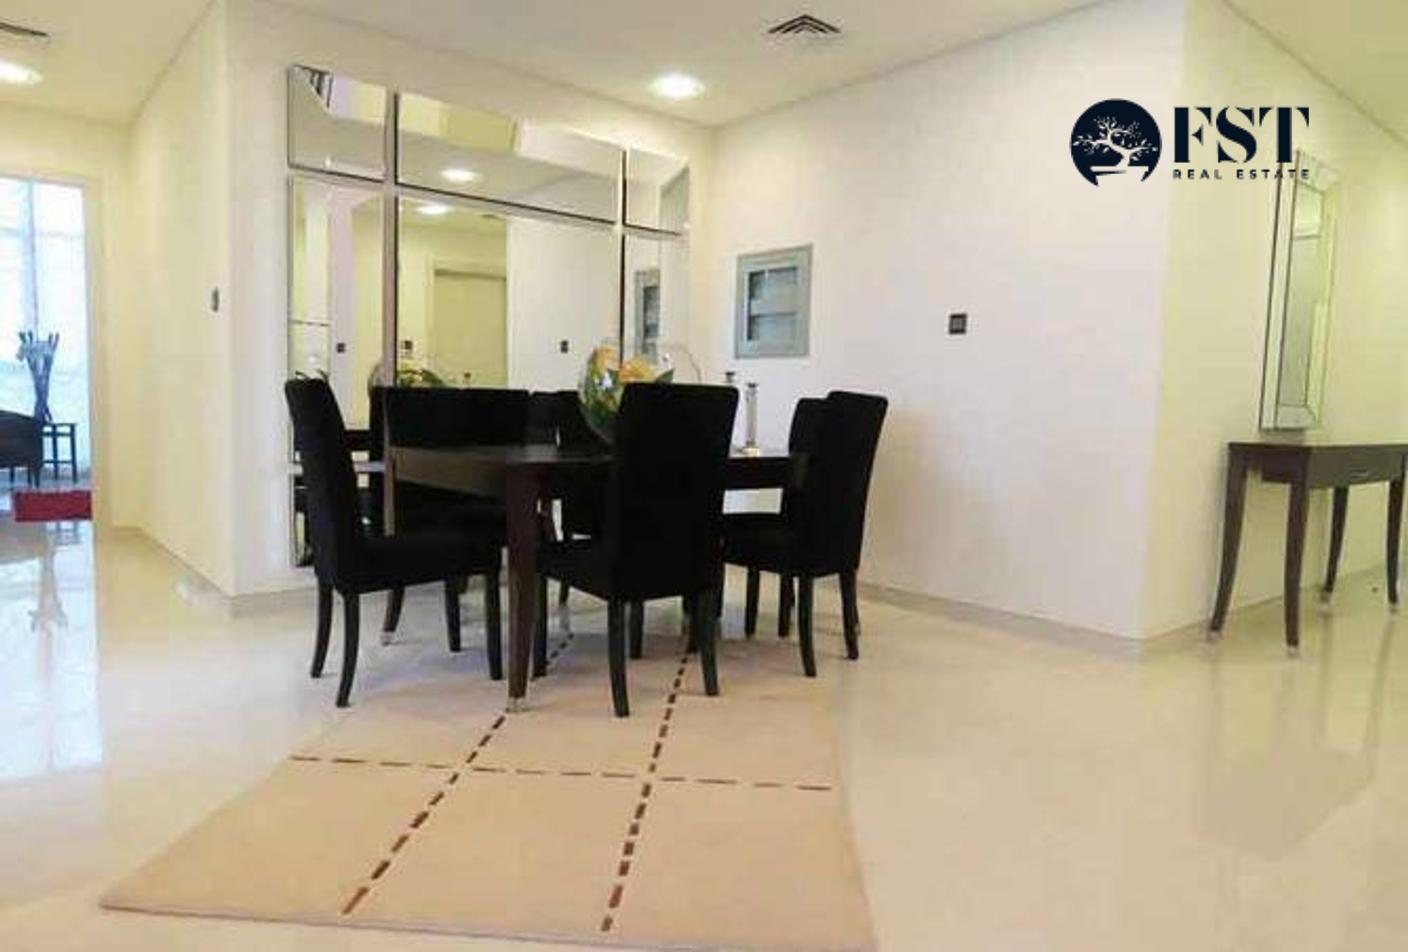 2 bed, 3 bath Apartment for sale in Al Mashroom Meydan, Meydan, Dubai for price AED 1910000 